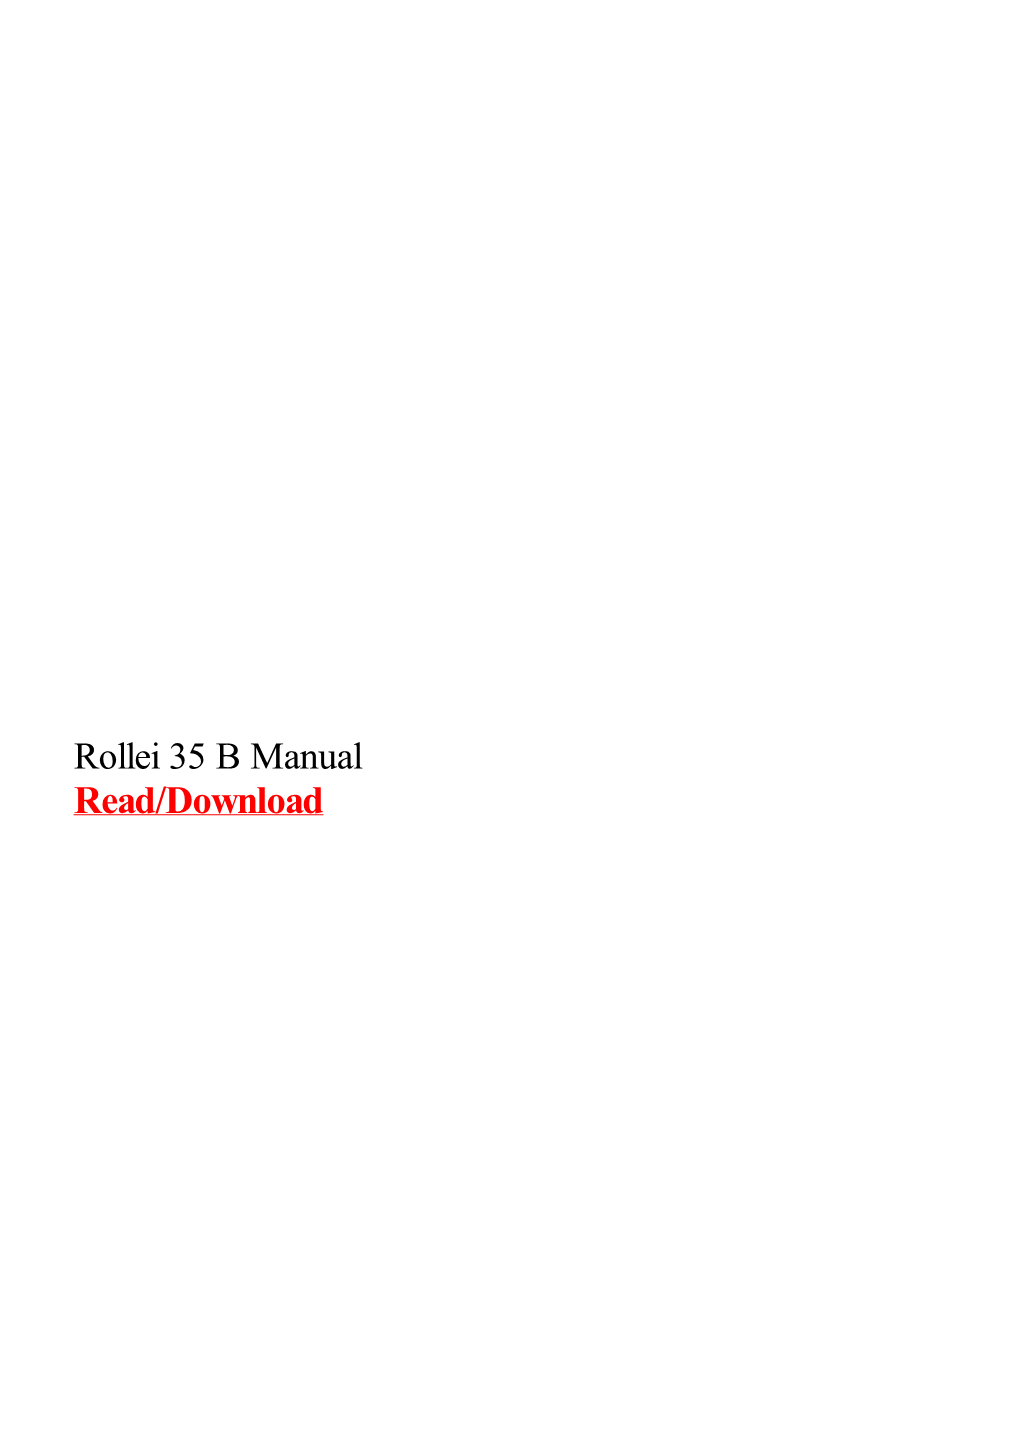 Rollei 35 B Manual